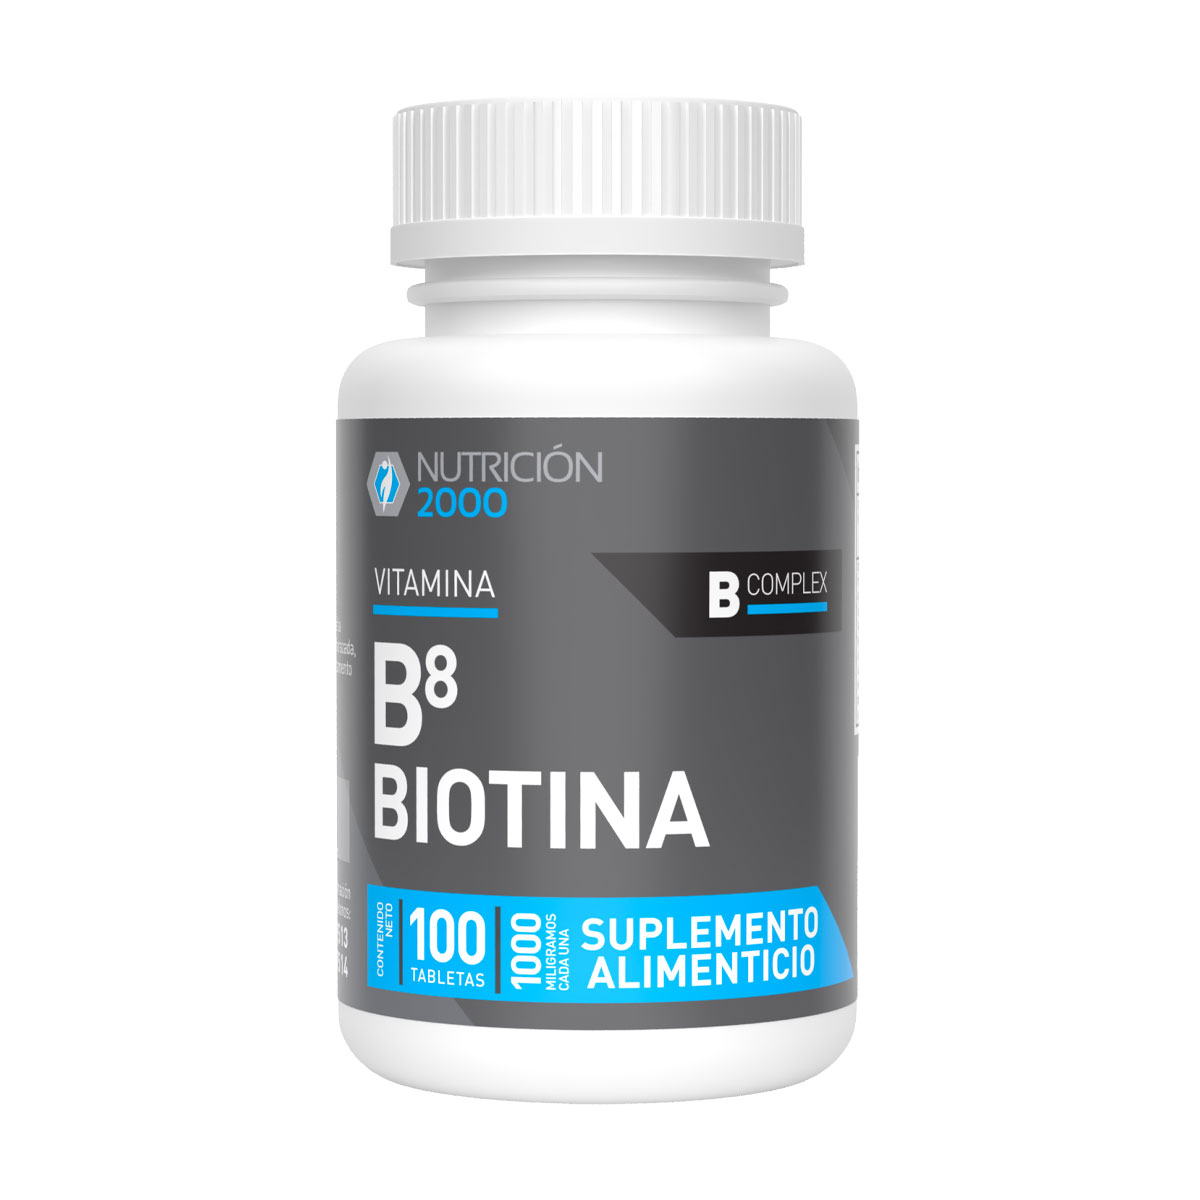 Vitamina B8 Biotina 100 Tabletas 1000 mg Nutrición 2000